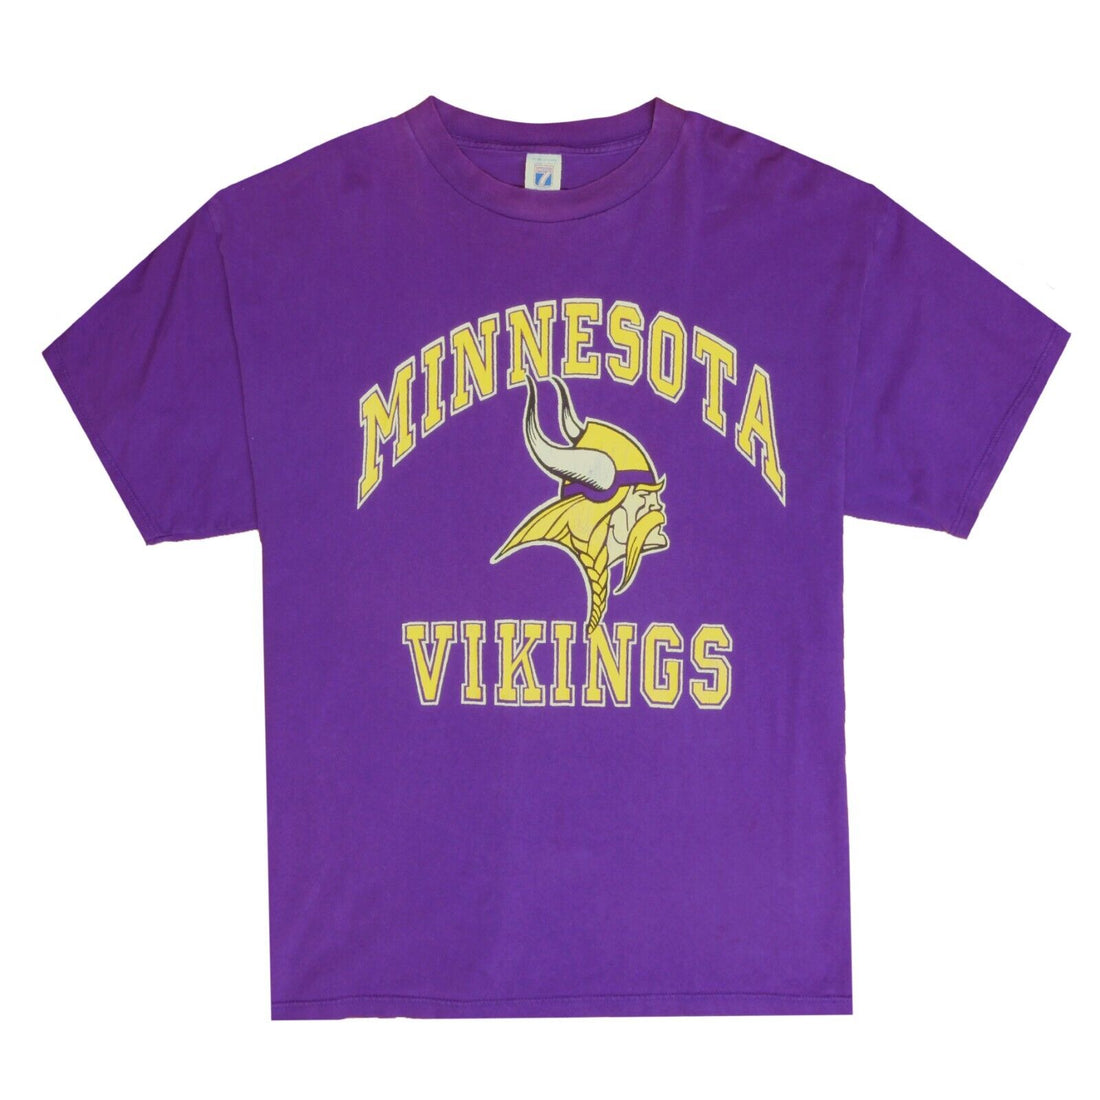 Vintage Minnesota Vikings Logo 7 T-Shirt Size 2XL Purple 90s NFL